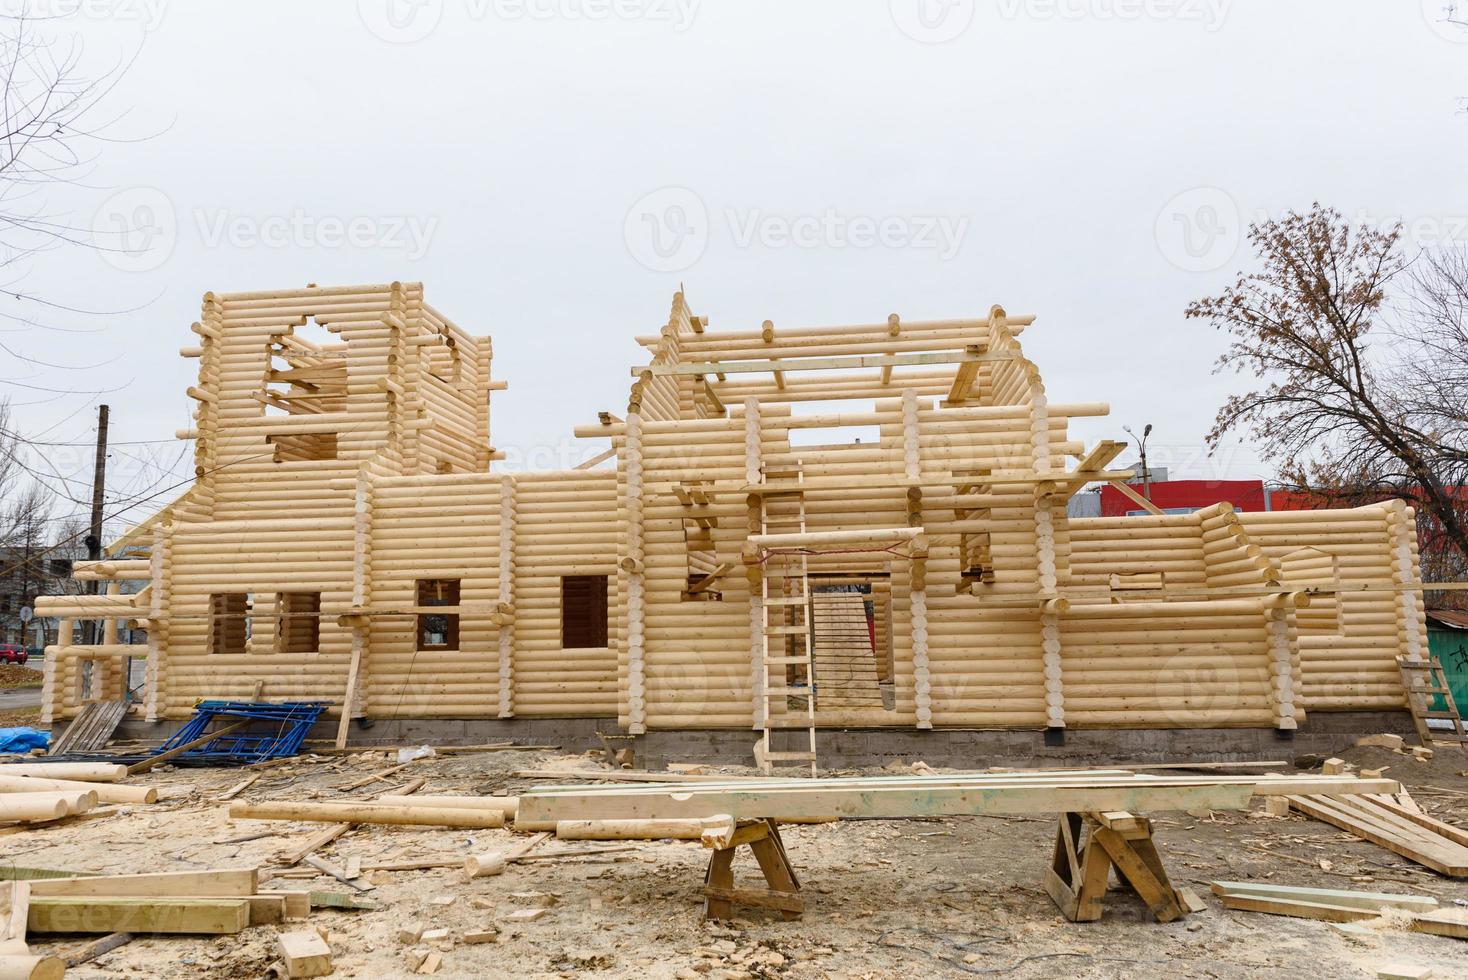 Construcción de una iglesia cristiana hecha de troncos de madera tratados.  3156788 Foto de stock en Vecteezy